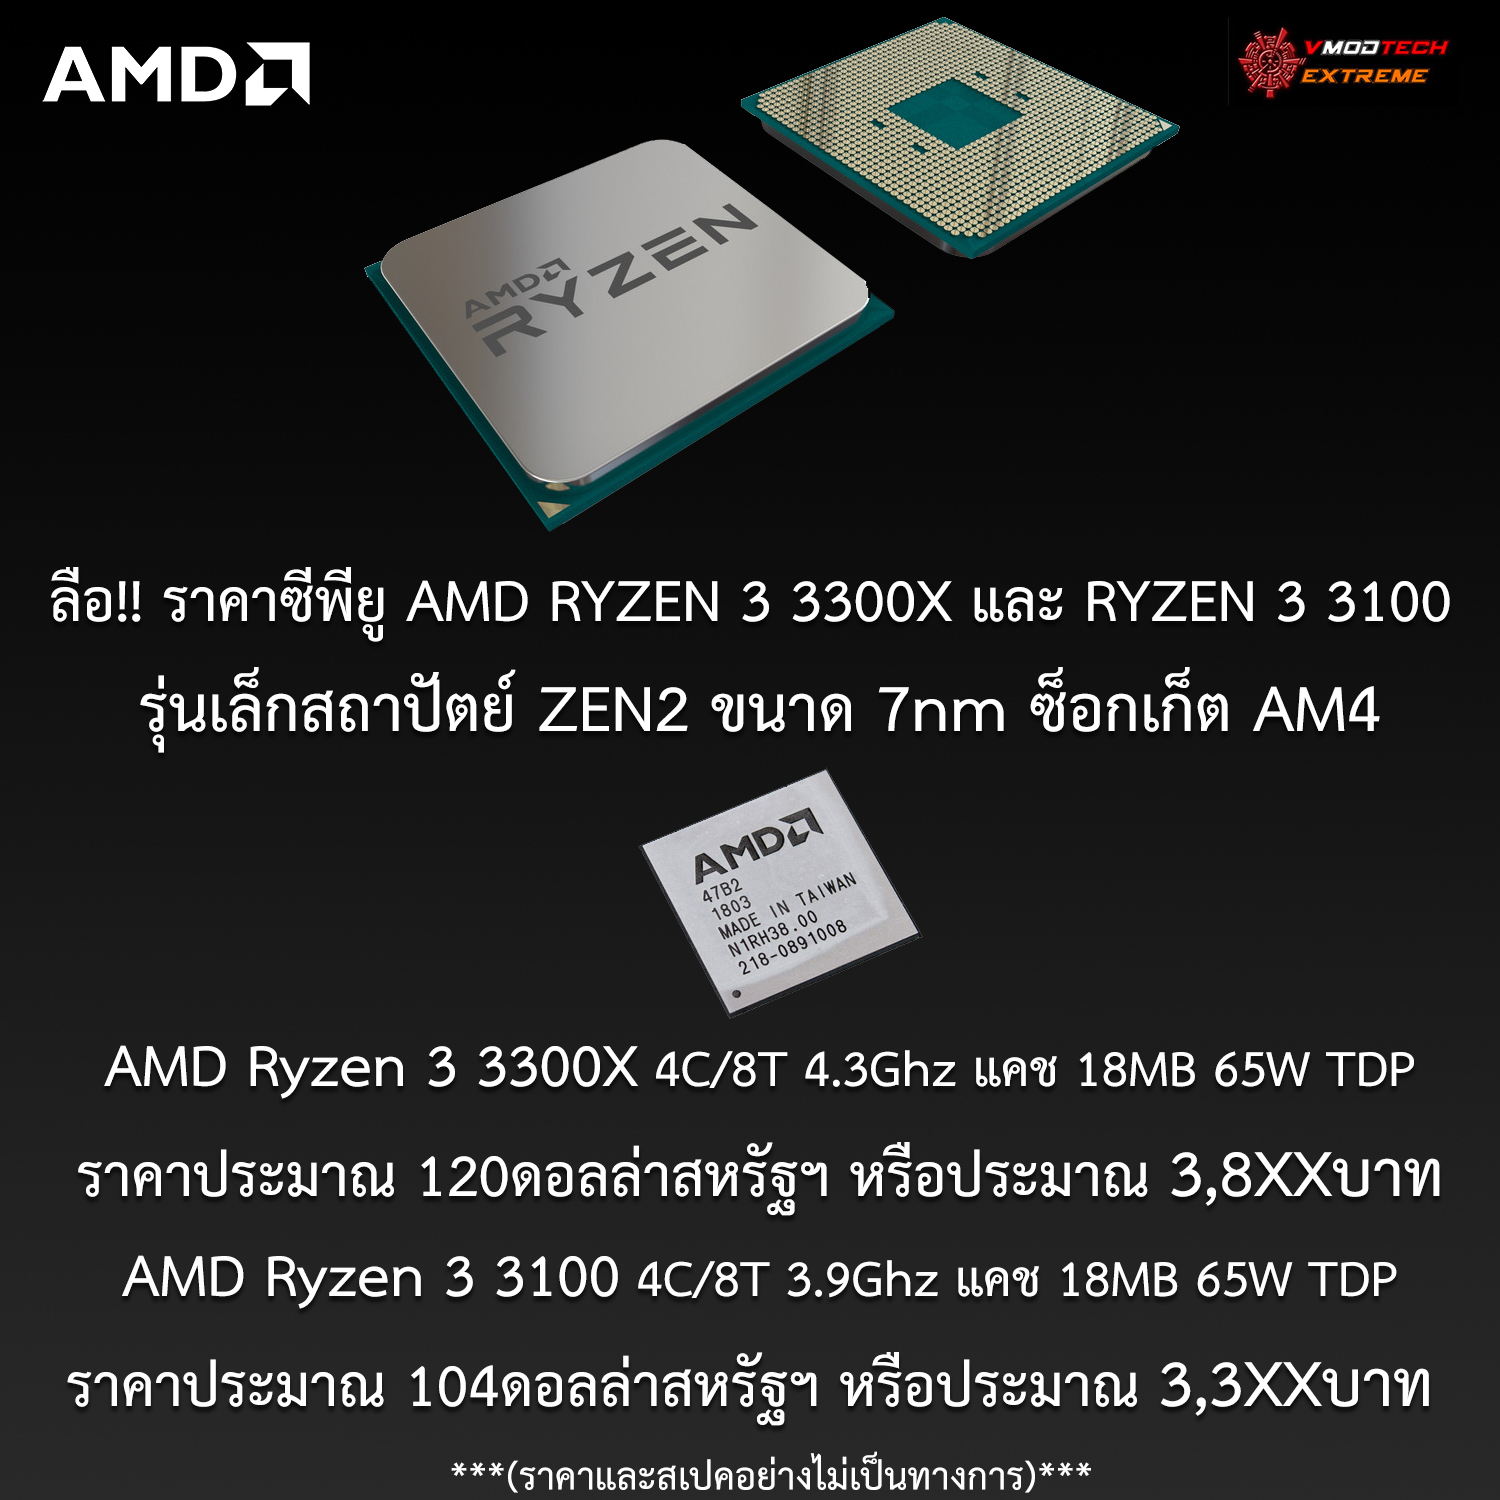 amd ryzen 3 3300x ryzen3 3100 zen2 price ลือ!! ราคาซีพียูรุ่นเล็ก AMD RYZEN 3 3300X ราคาประมาณ 120ดอลล่าสหรัฐฯ หรือประมาณ 3,8XXบาท และ AMD RYZEN 3 3100 ราคาประมาณ 104ดอลล่าสหรัฐฯ หรือประมาณ 3,3XXบาท อย่างไม่เป็นทางการ 